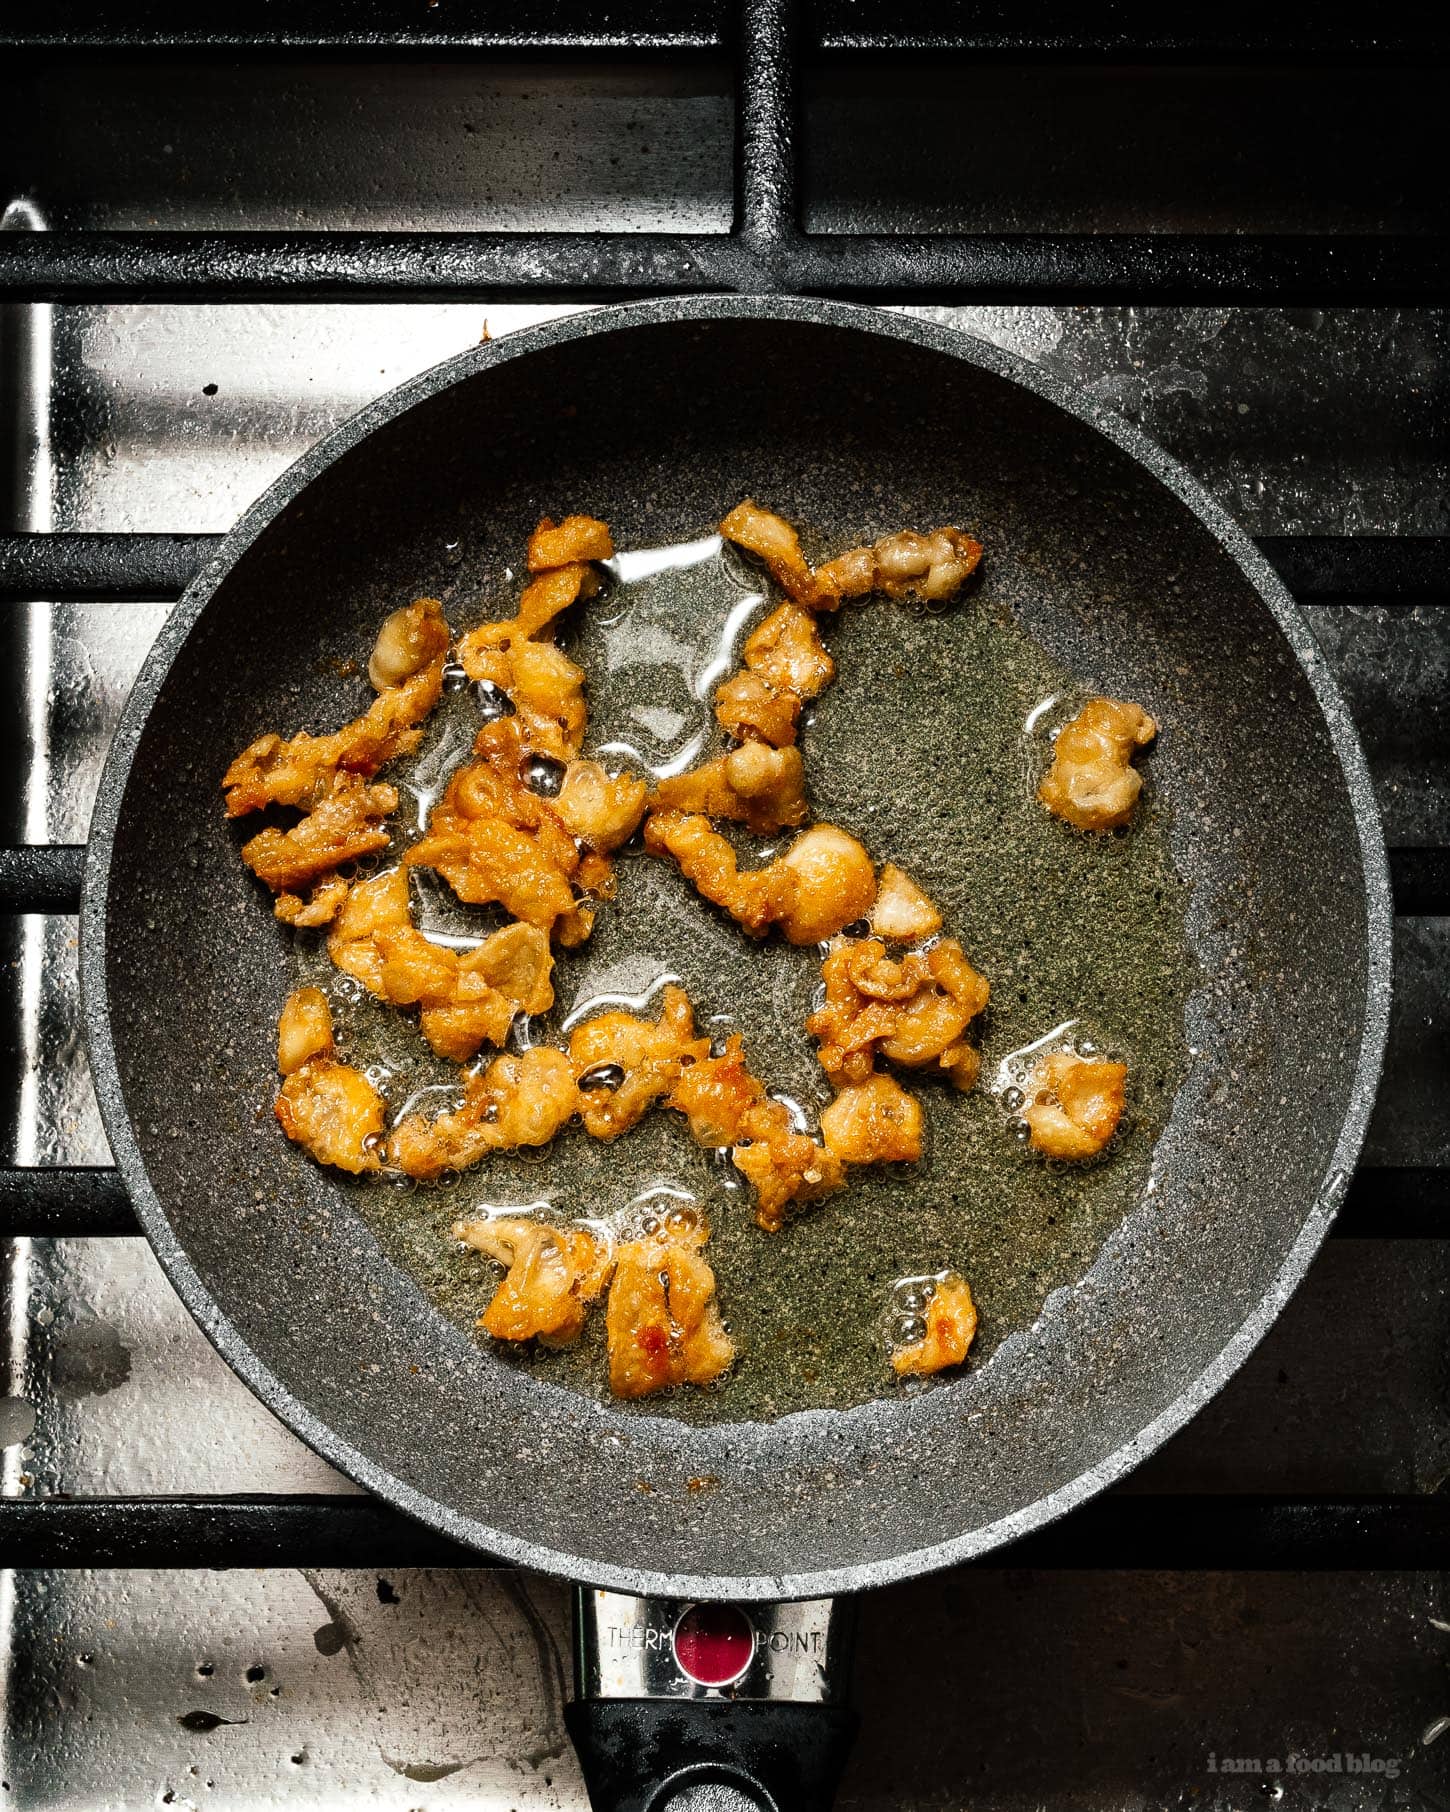 超级简单又令人满意的海南鸡饭:多汁的蒸鸡和姜蒜饭在同一个锅里煮。这是你晚餐想要的，现在!#海南鸡饭#鸡肉饭#食谱#晚餐#一锅#简易#鸡肉食谱#米饭#鸡肉饭